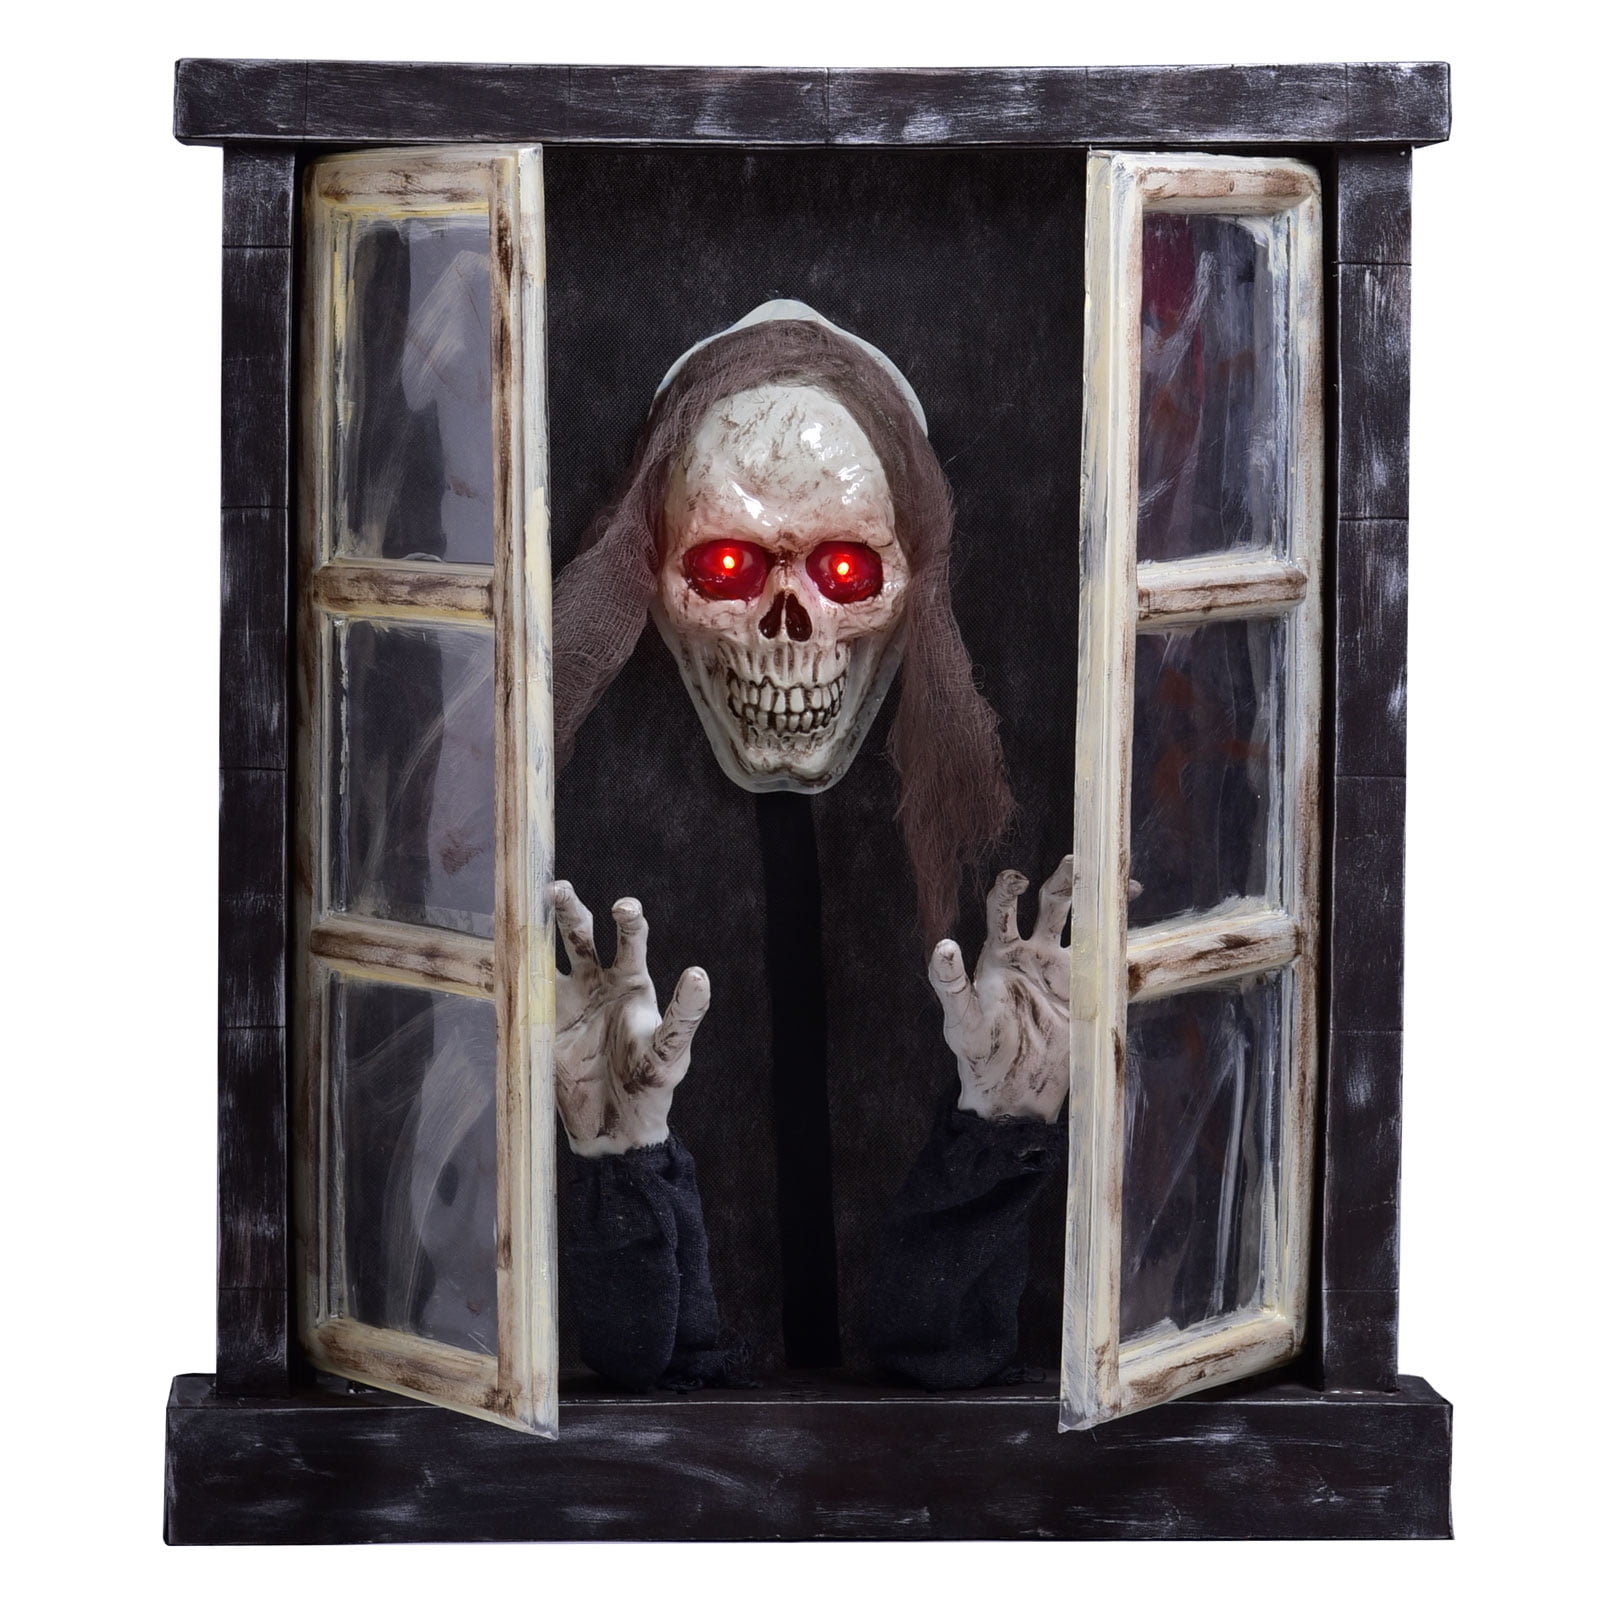 Skeleton Glow in the Dark Crow Bones Life Size Horror Statue Halloween Prop Gag 